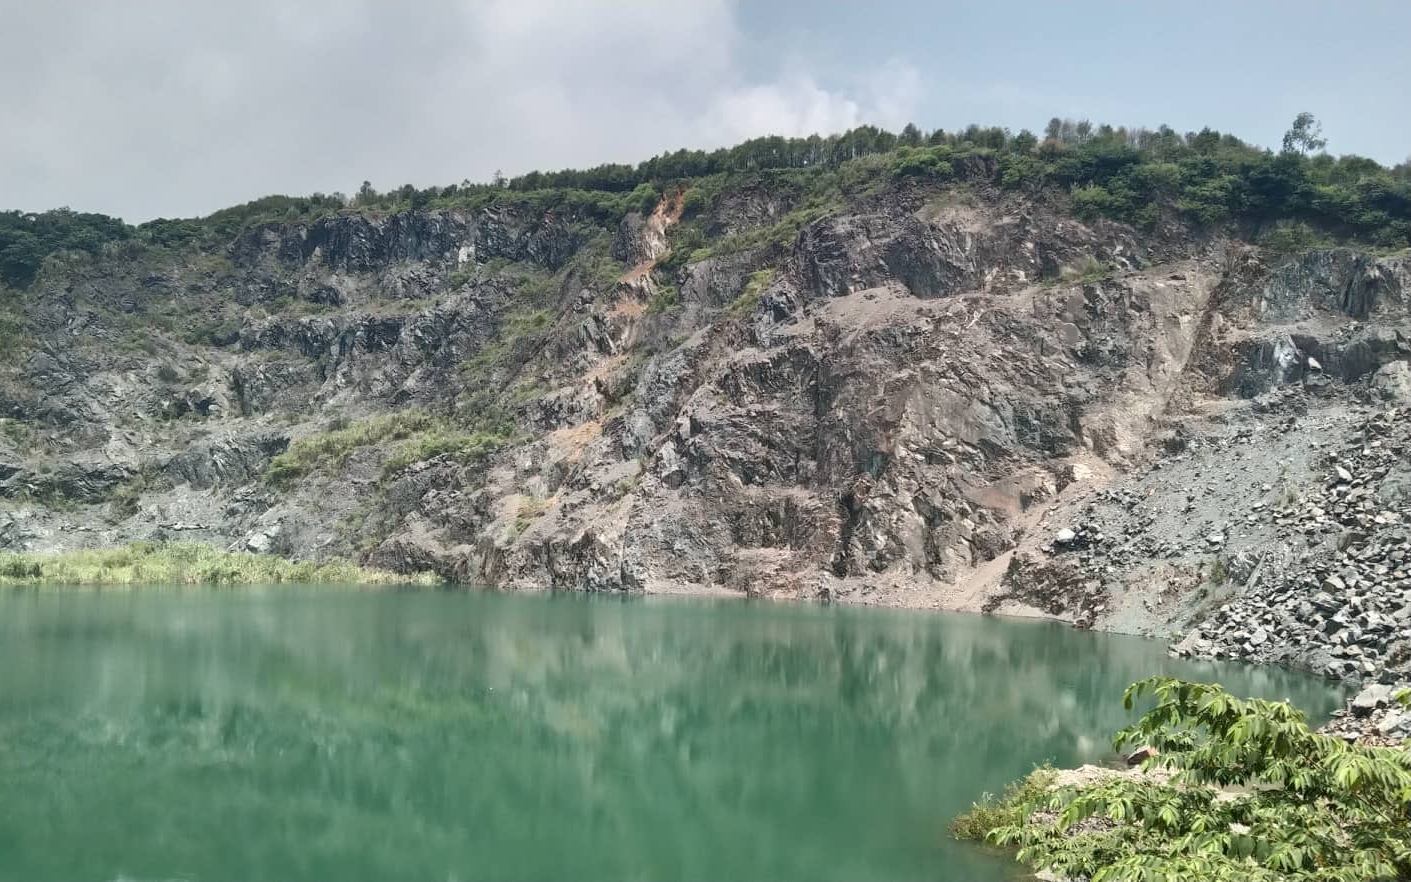 Hậu khai thác khoáng sản ở Hà Nội: Huyện Quốc Oai nêu rõ sai phạm của các ông chủ mỏ